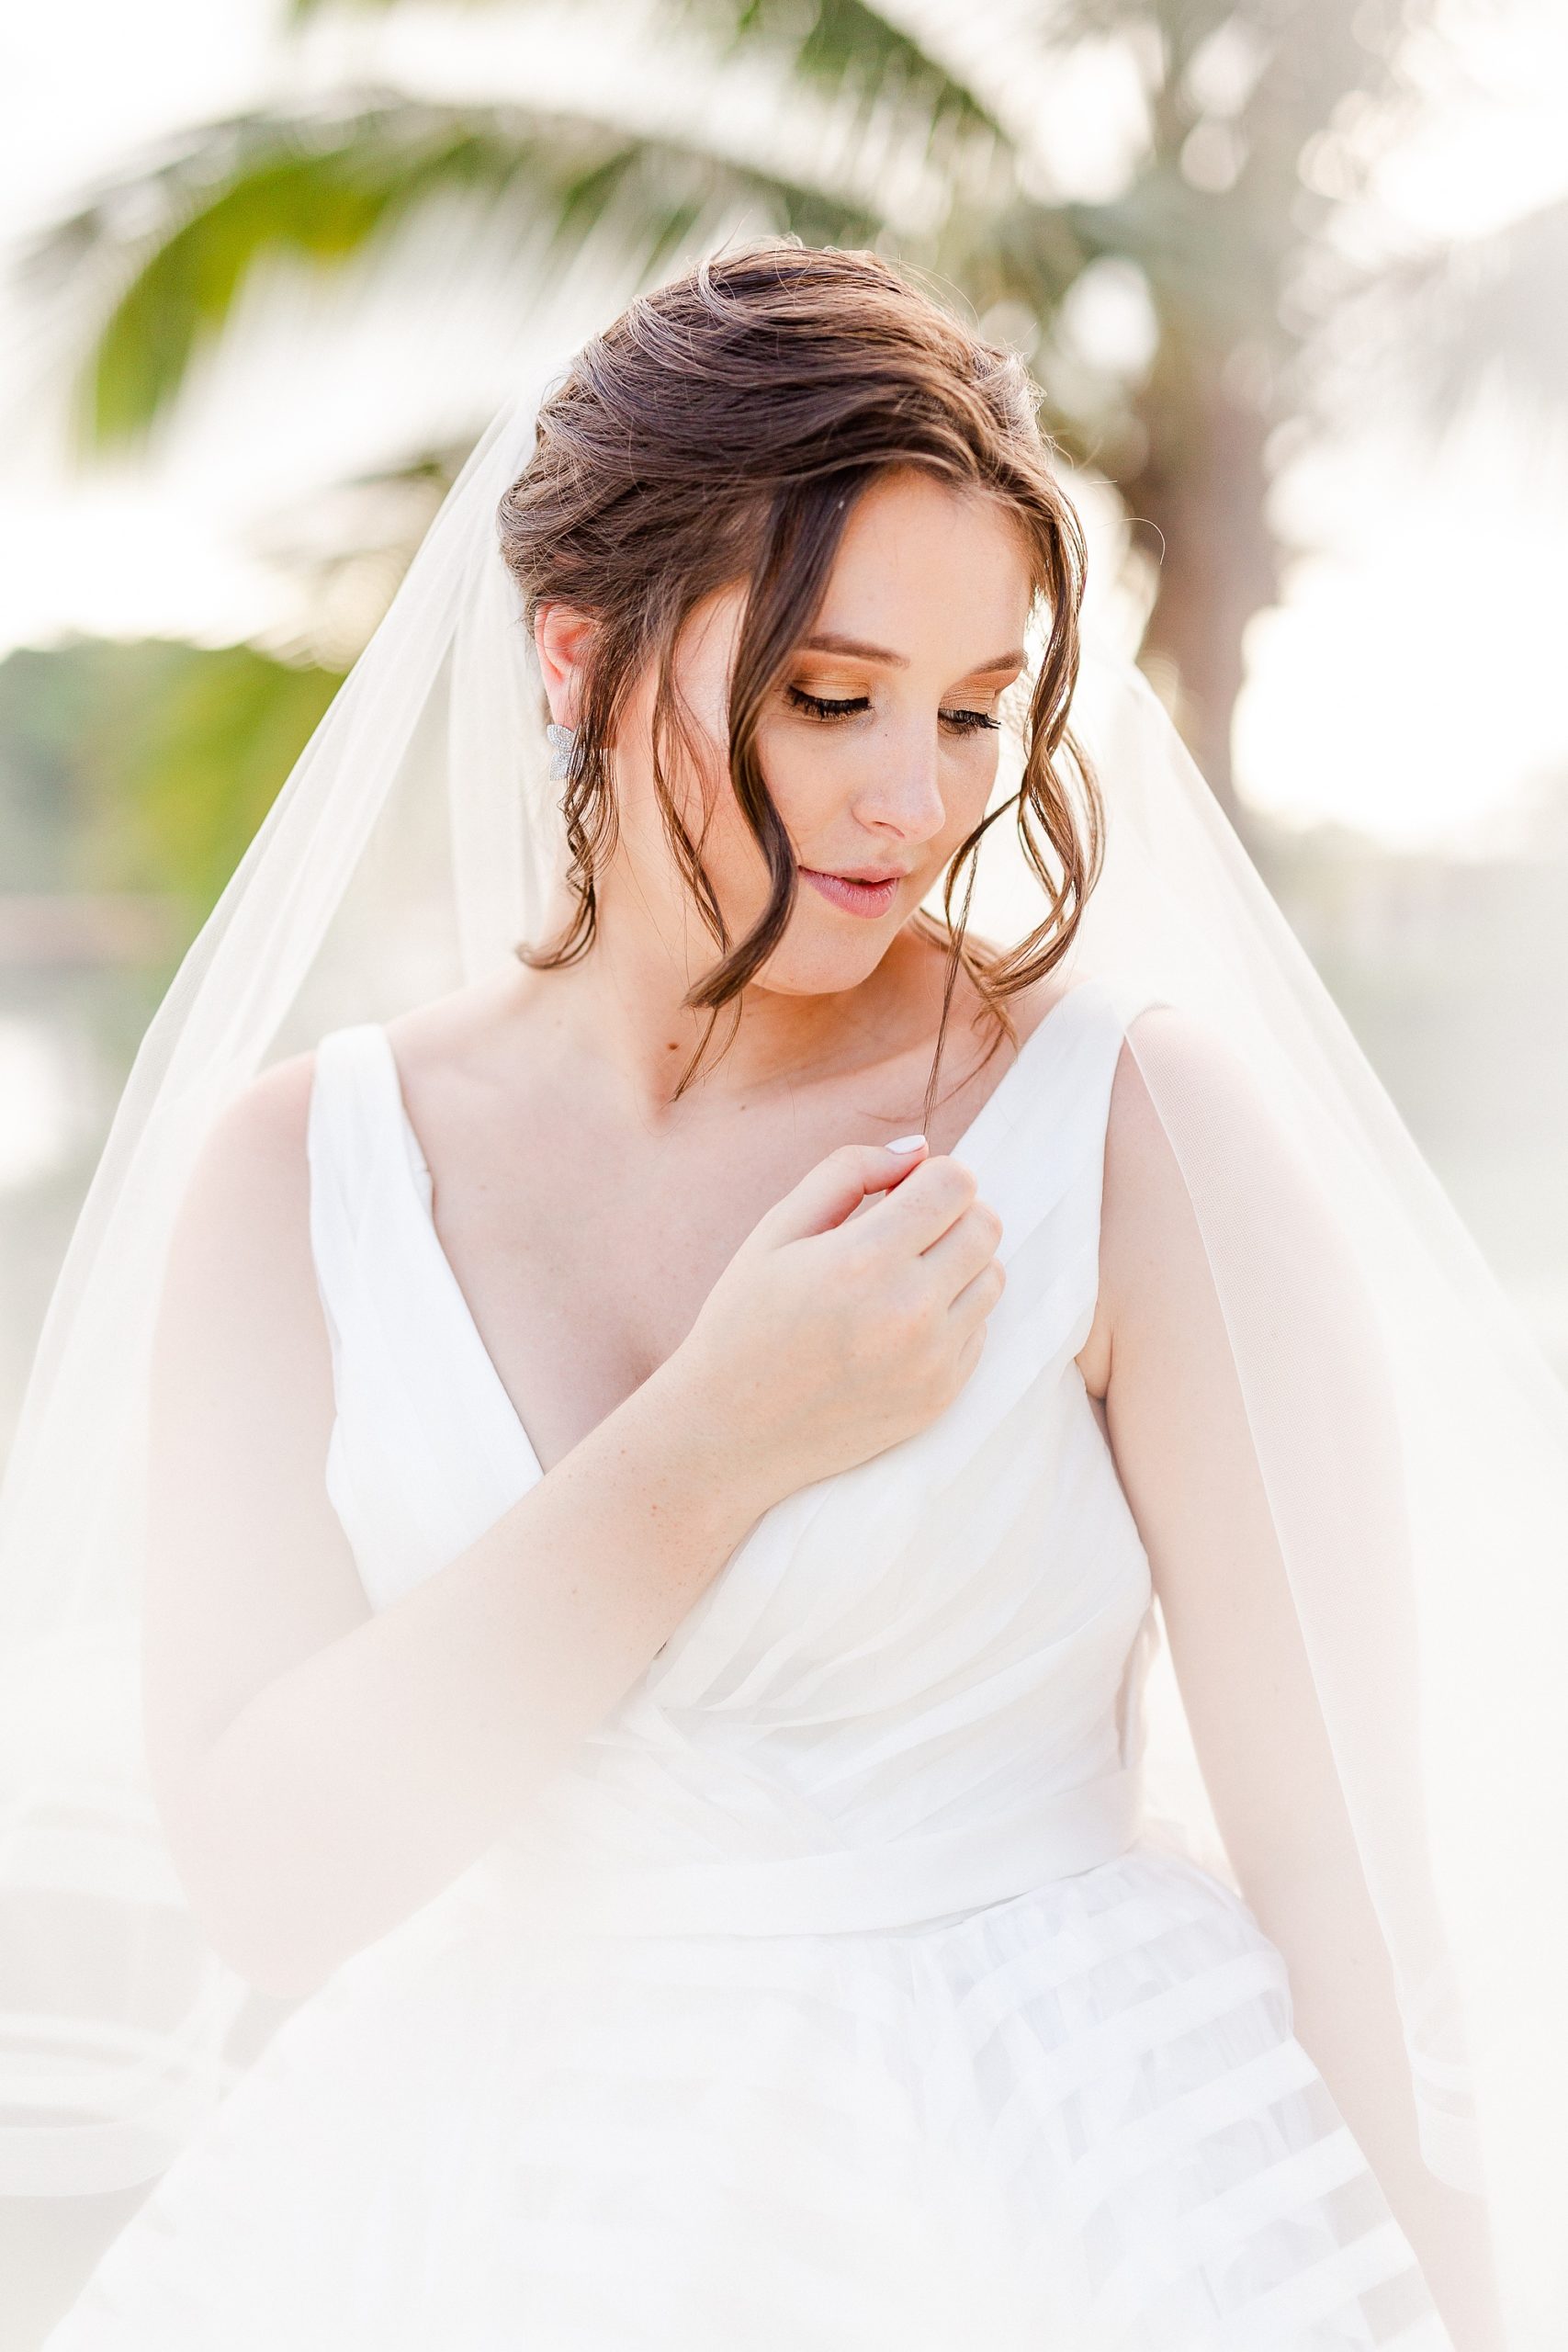 bride poses with veil around arms on beach